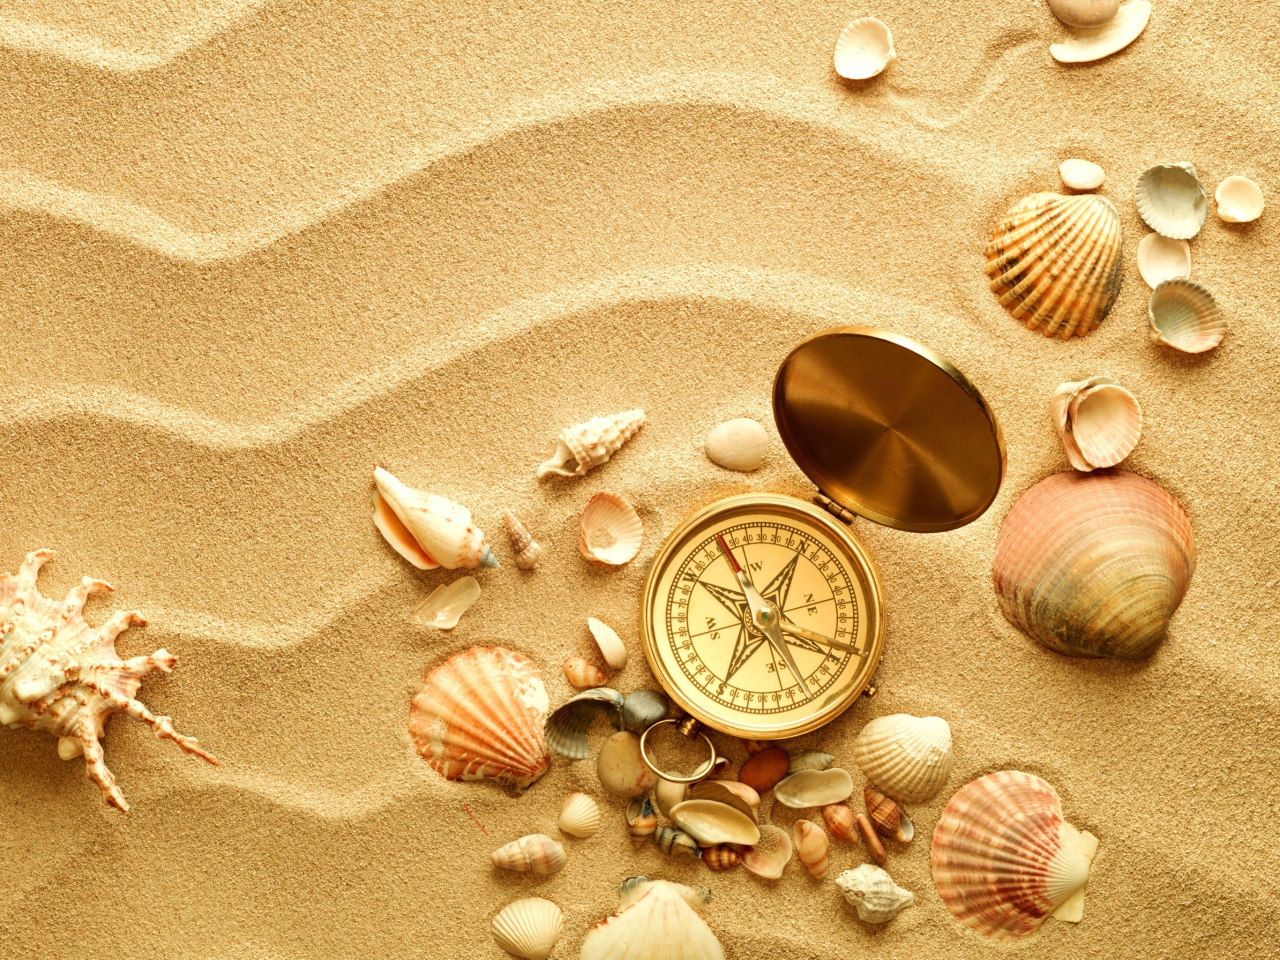 Обои Compass And Shells On Sand 1280x960